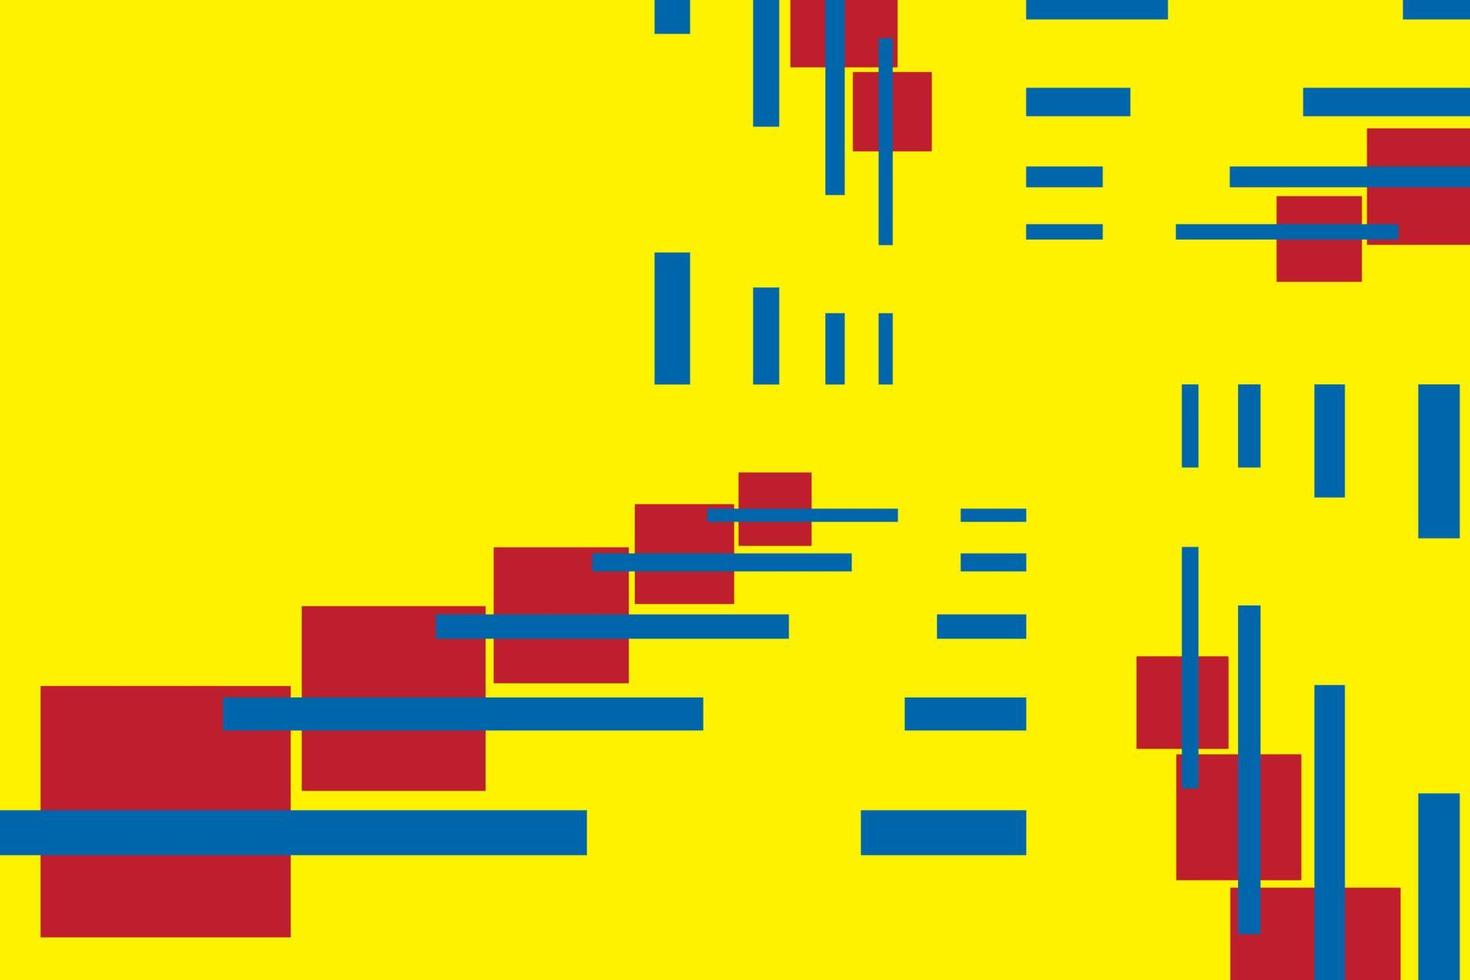 primär färger bakgrund, blå, röd, och gul i rektangel form. vektor illustration.